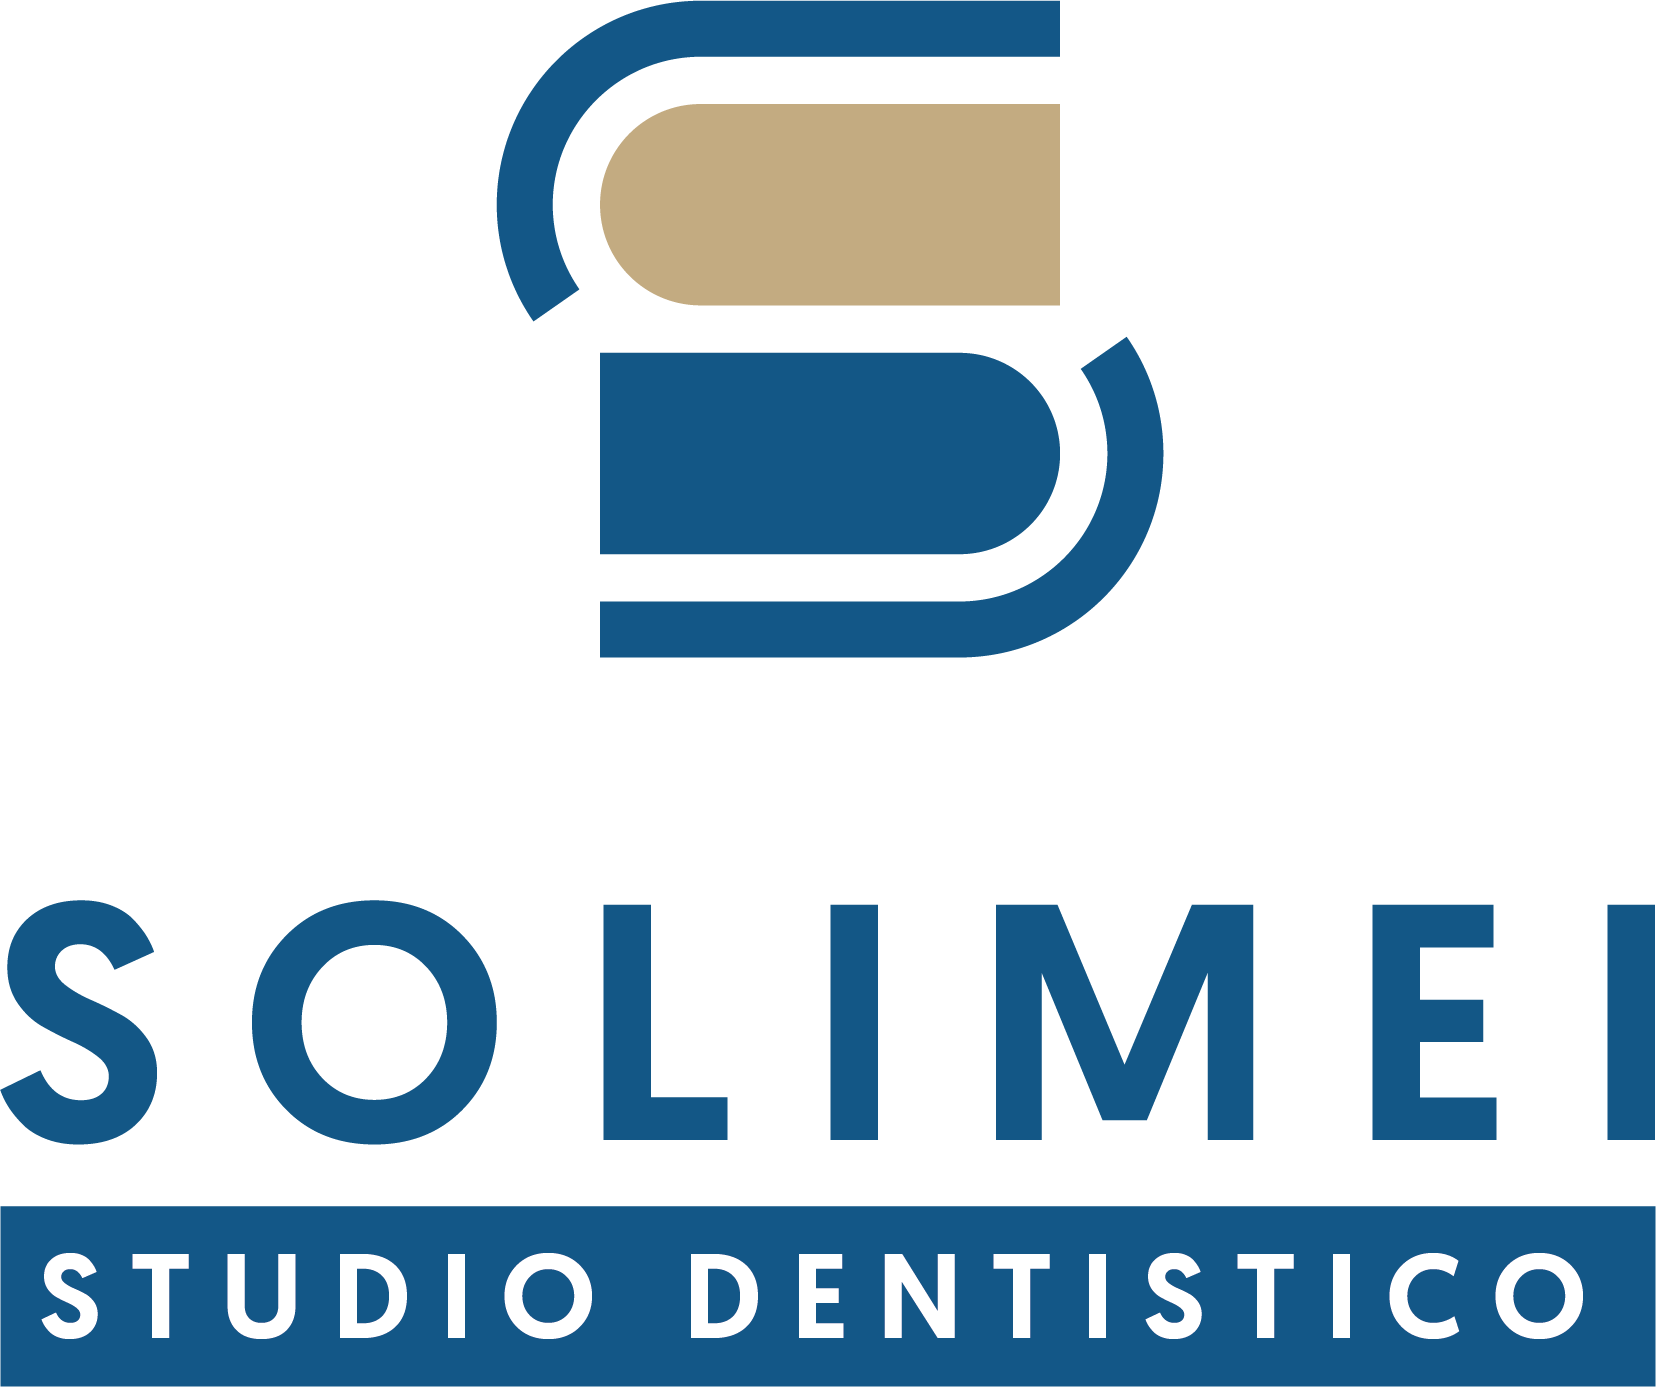 Studio Dentistico Solimei